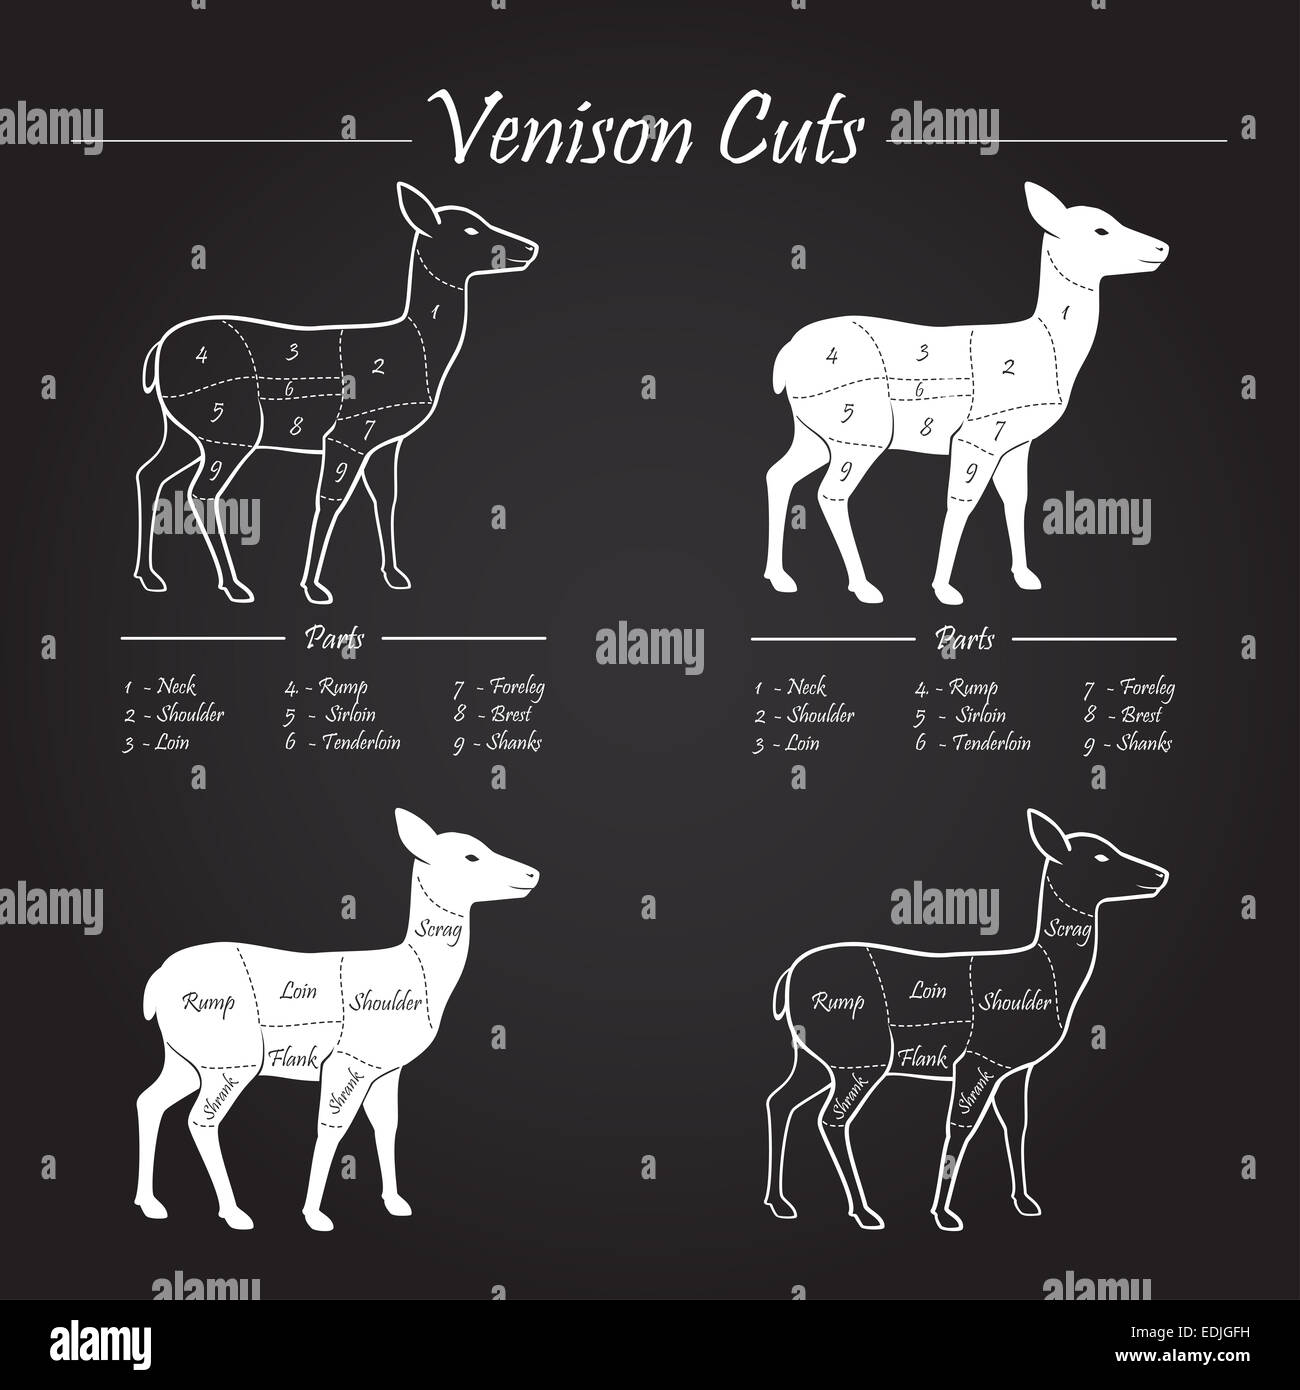 Venison meat cut diagram scheme - elements set on chalkboard Stock Photo